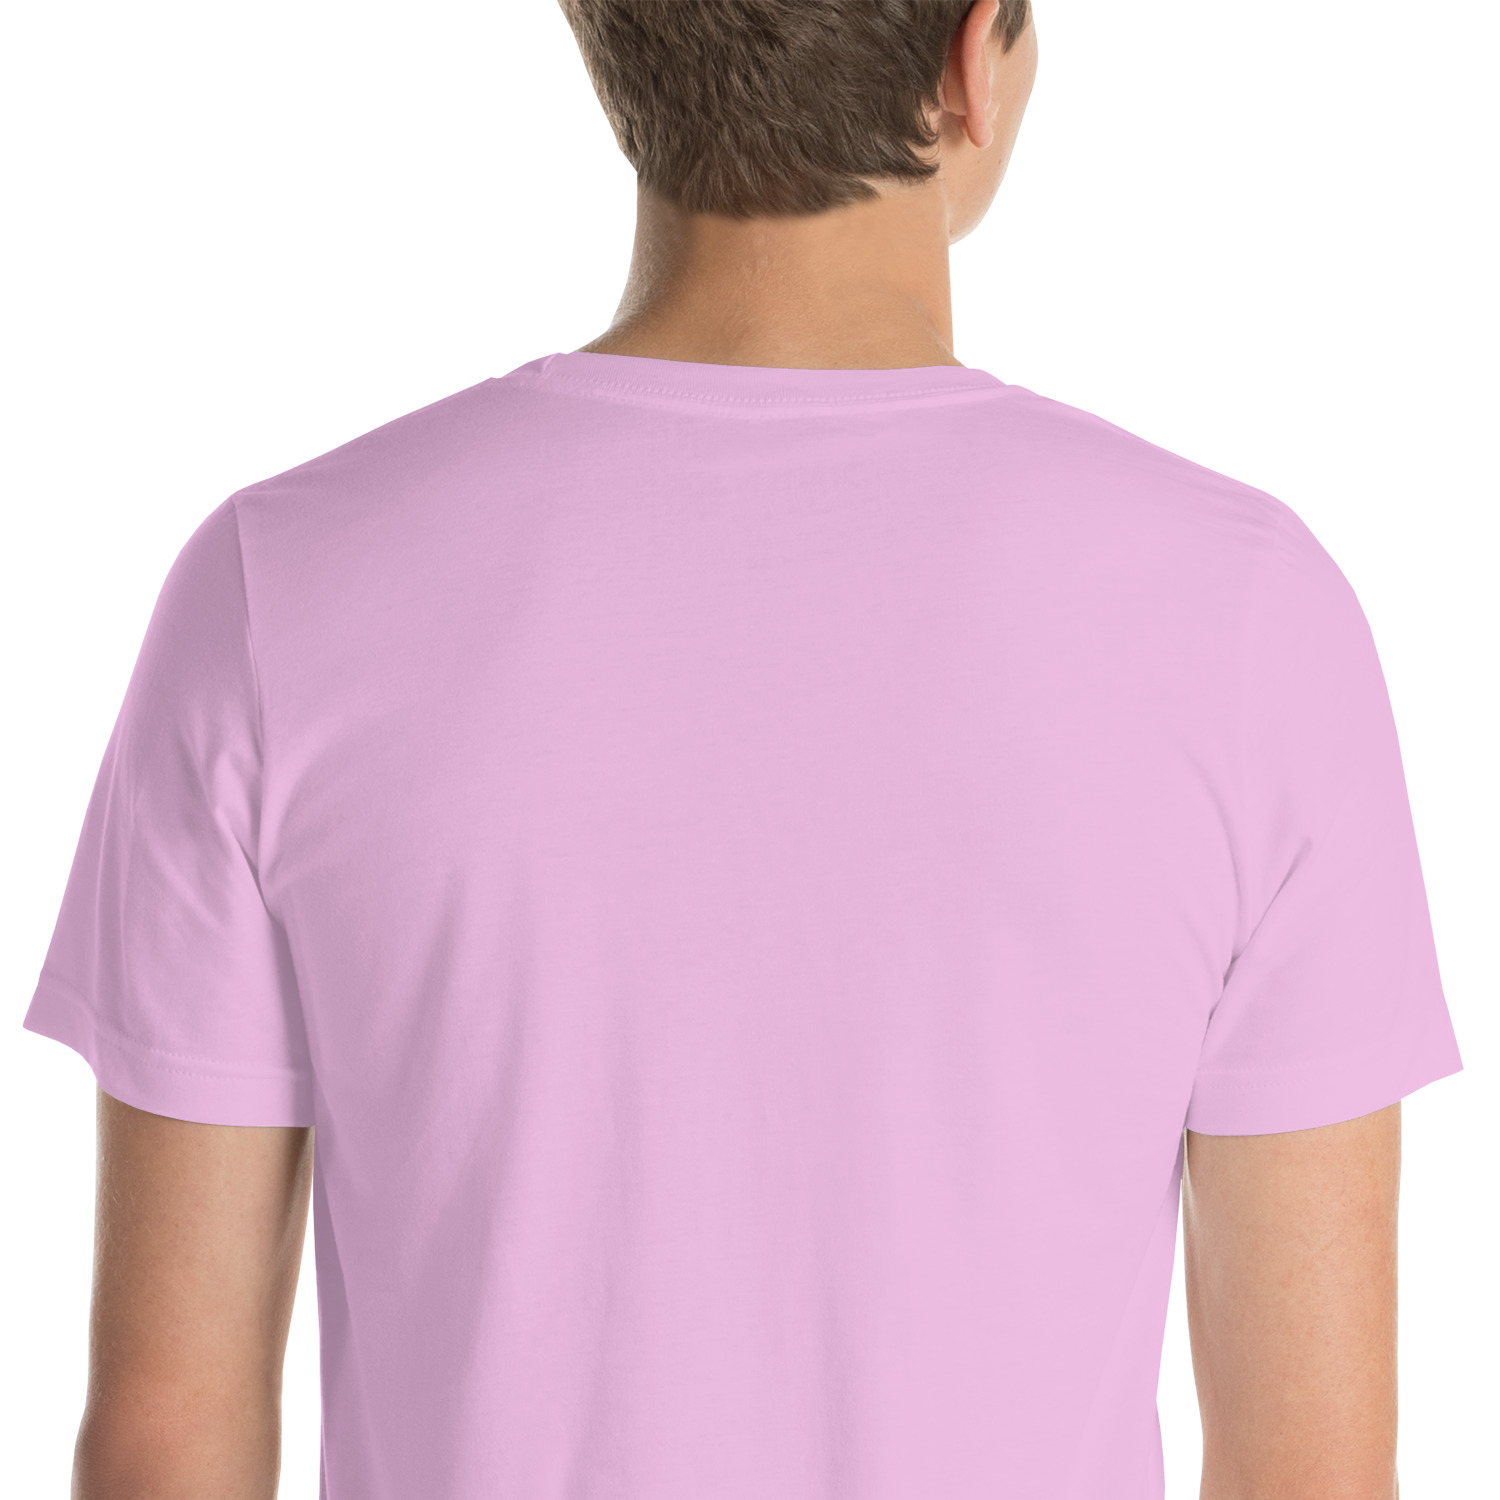 light purple t shirt template